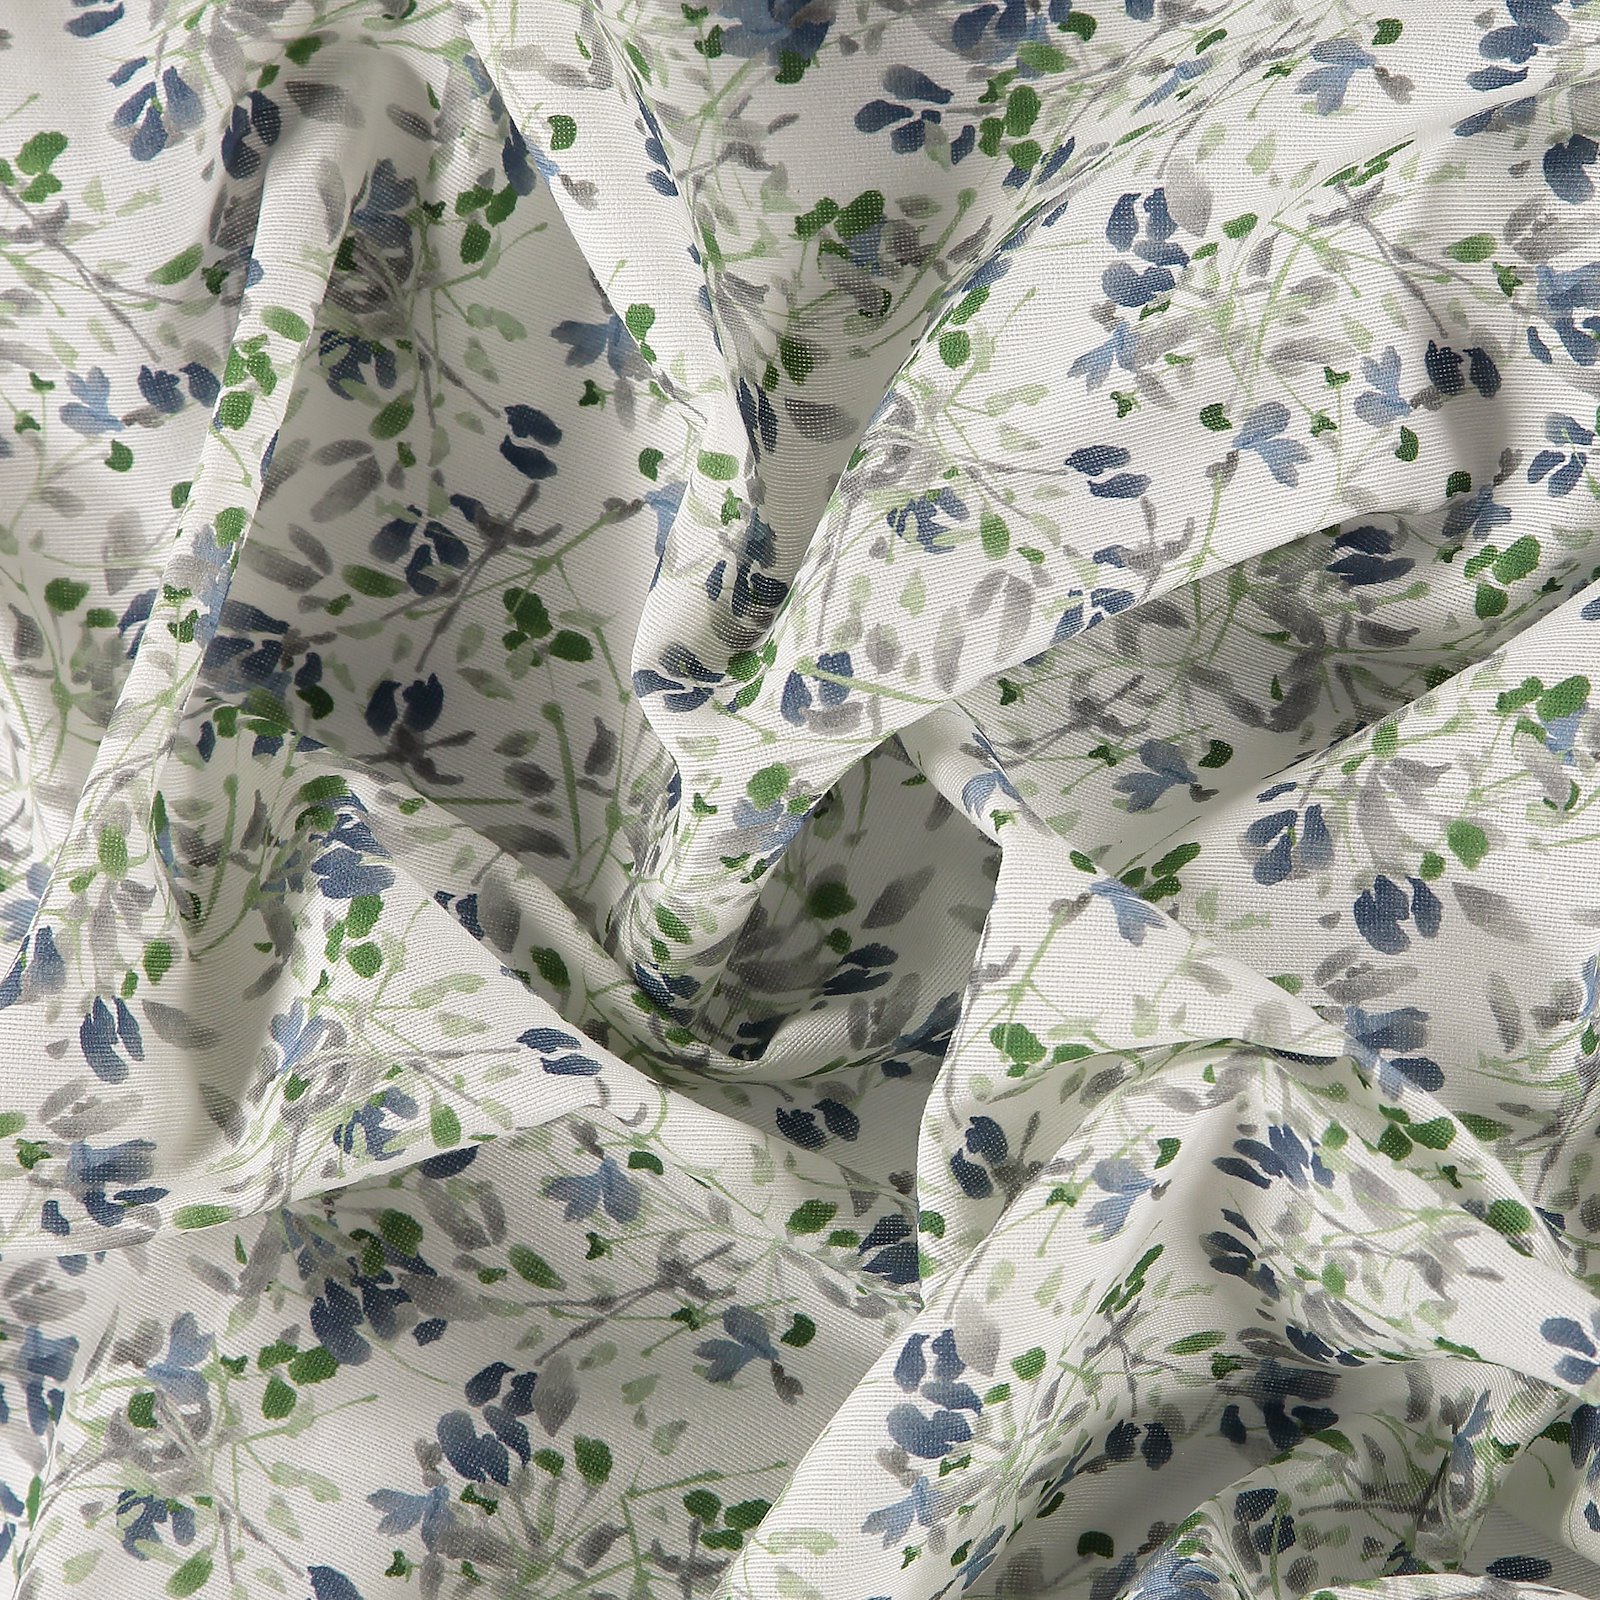 Gewebe, Weiß mit blau/grau/grünen Blumen 750370_pack